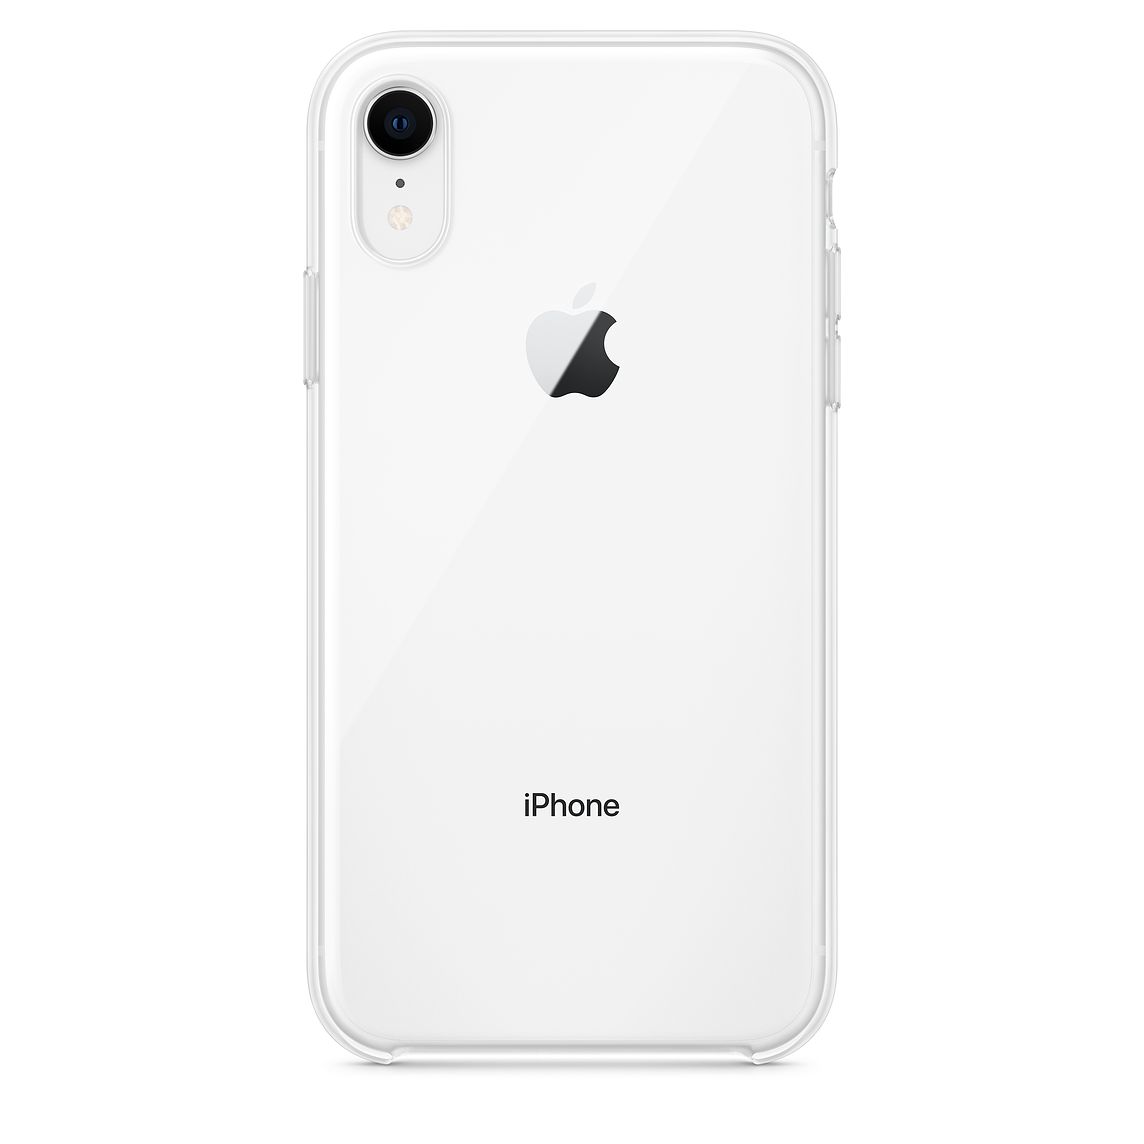 Apple začal prodávat čistě průhledný kryt na iPhone XR. Stojí neuvěřitelných 1 200 Kč – Jablíčkář.cz